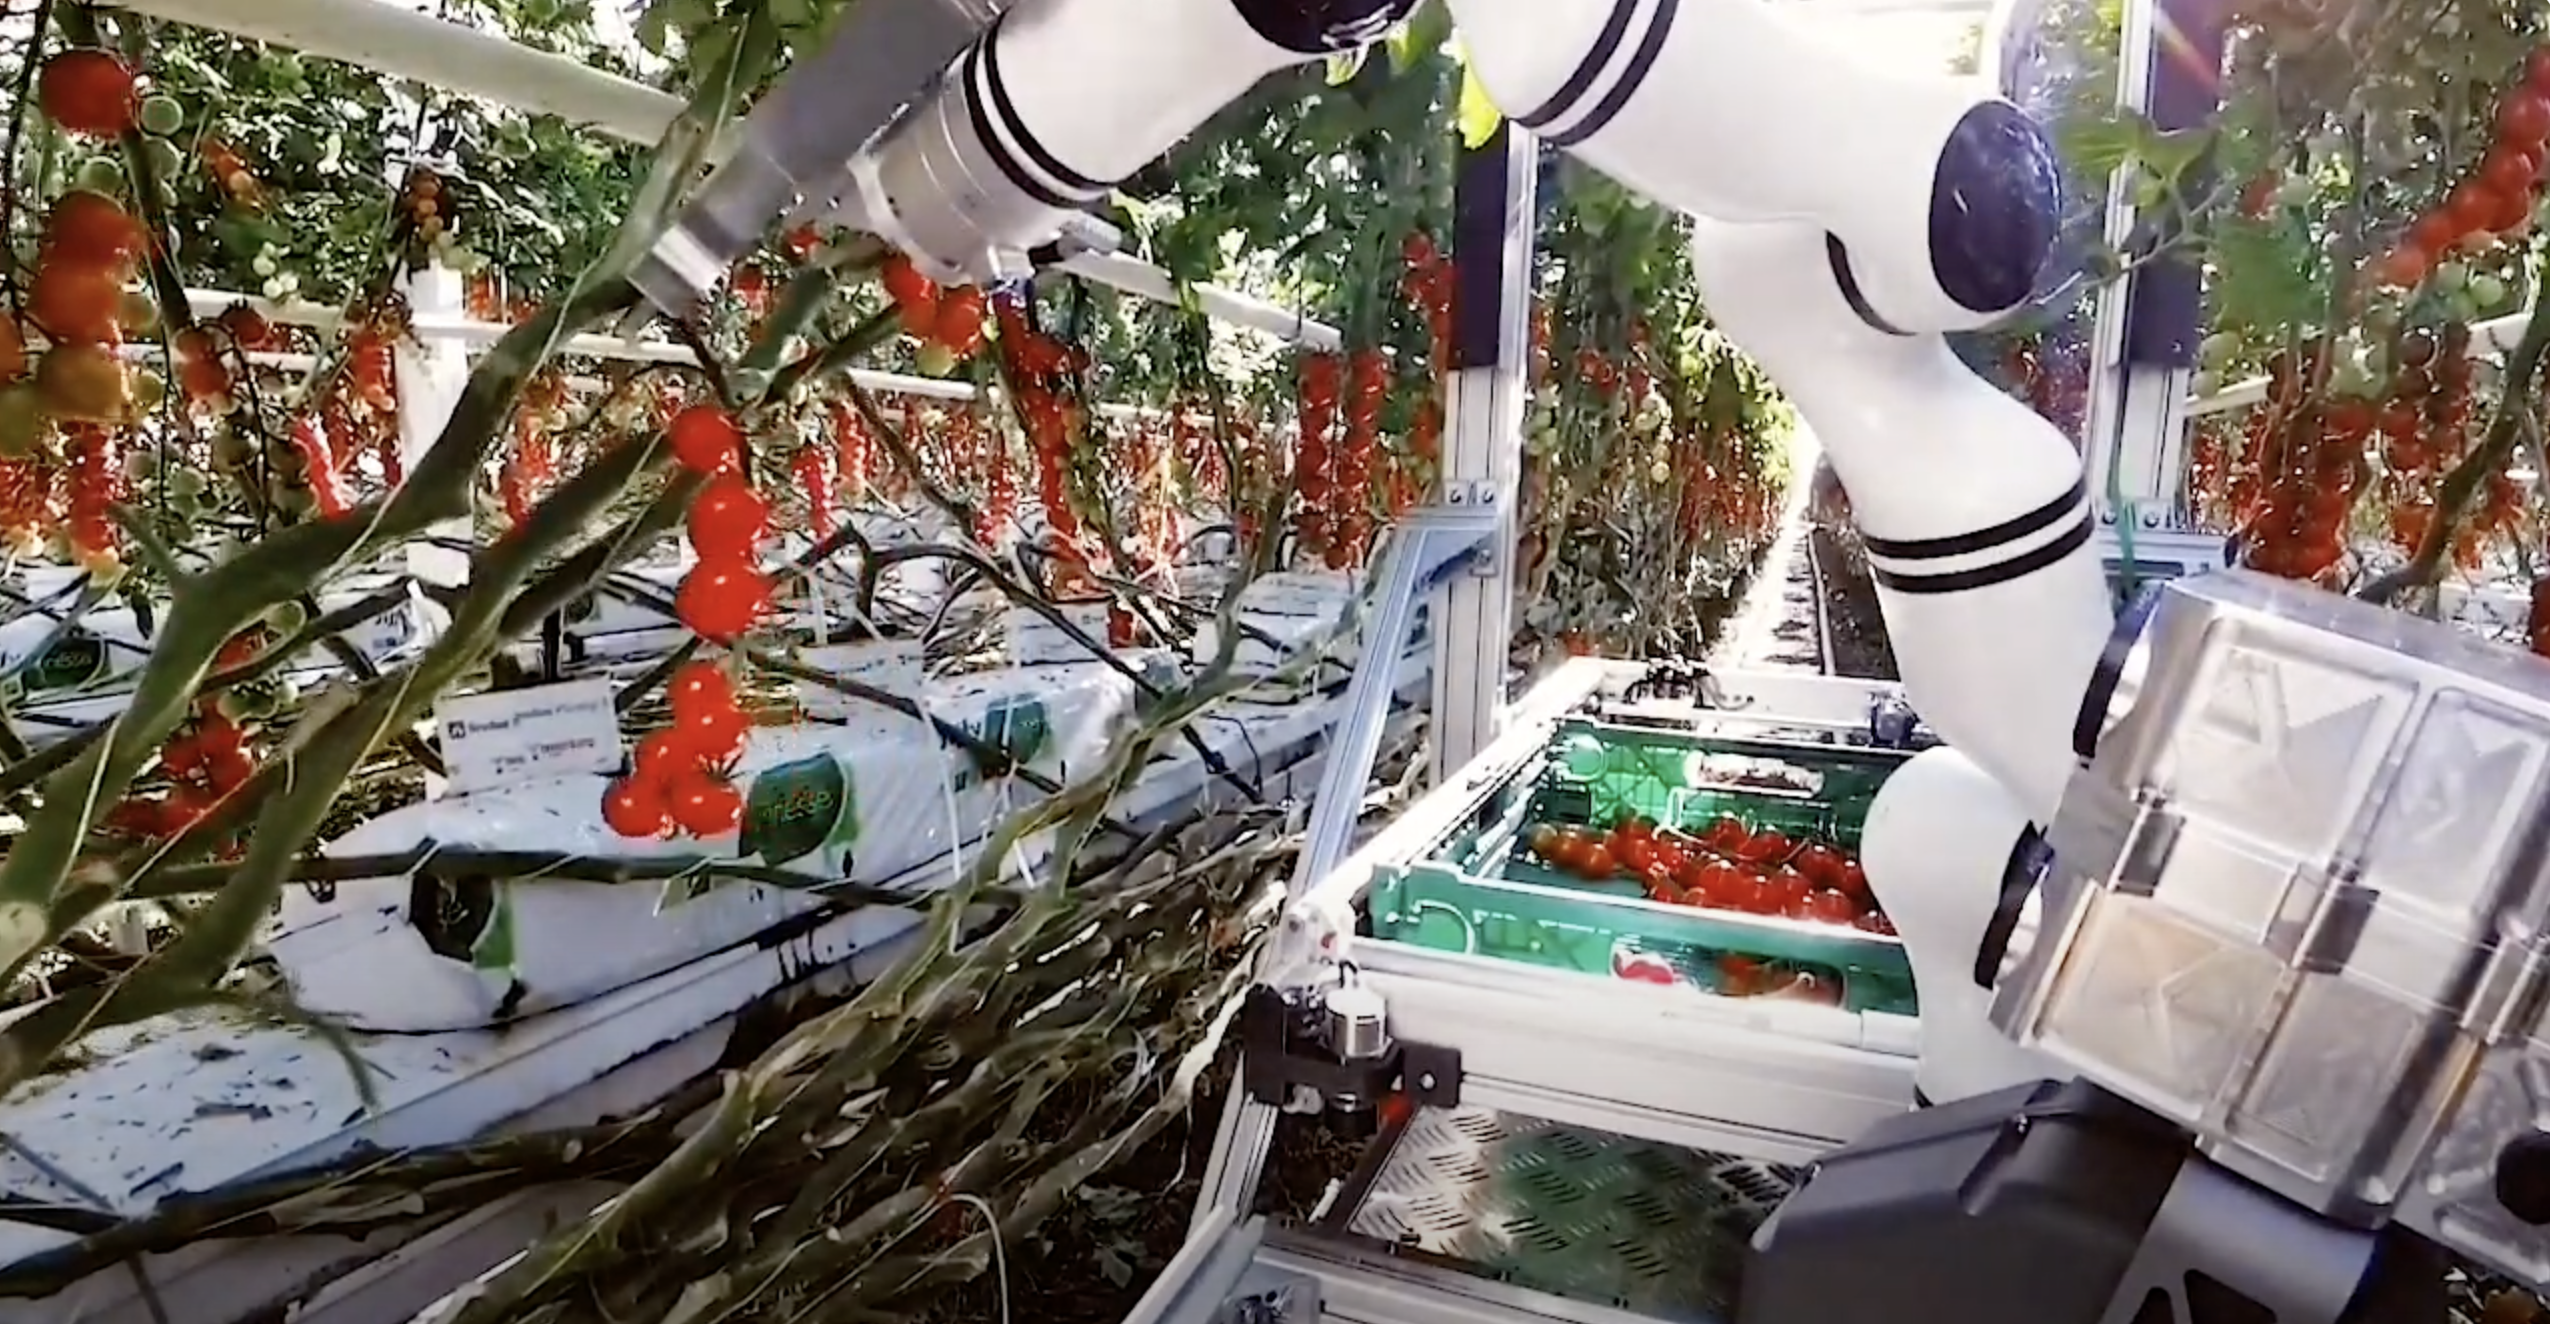 Roboter des Schweizer Startups Floating Robotics erntet Tomaten in Gewächshäusern (Video)